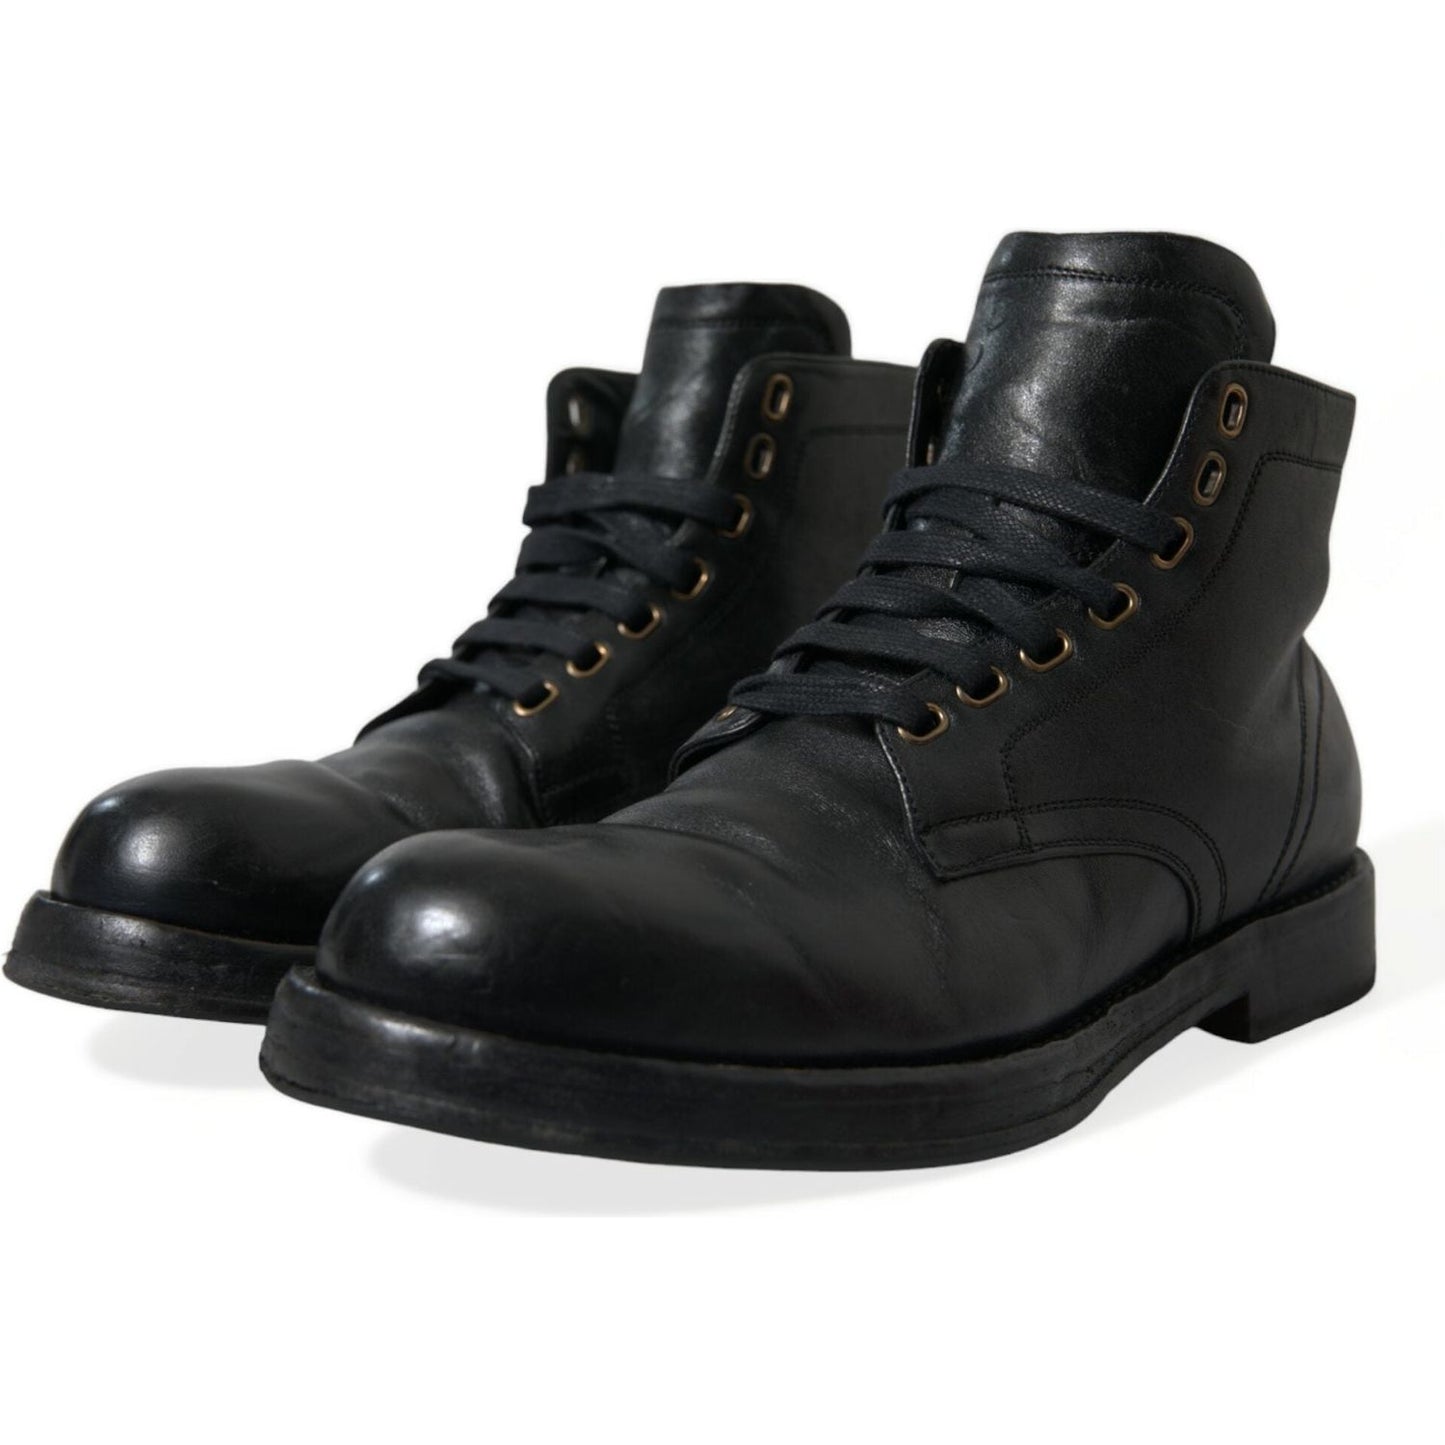 Dolce & Gabbana | Elegant Black Horse Leather Ankle Boots| McRichard Designer Brands   